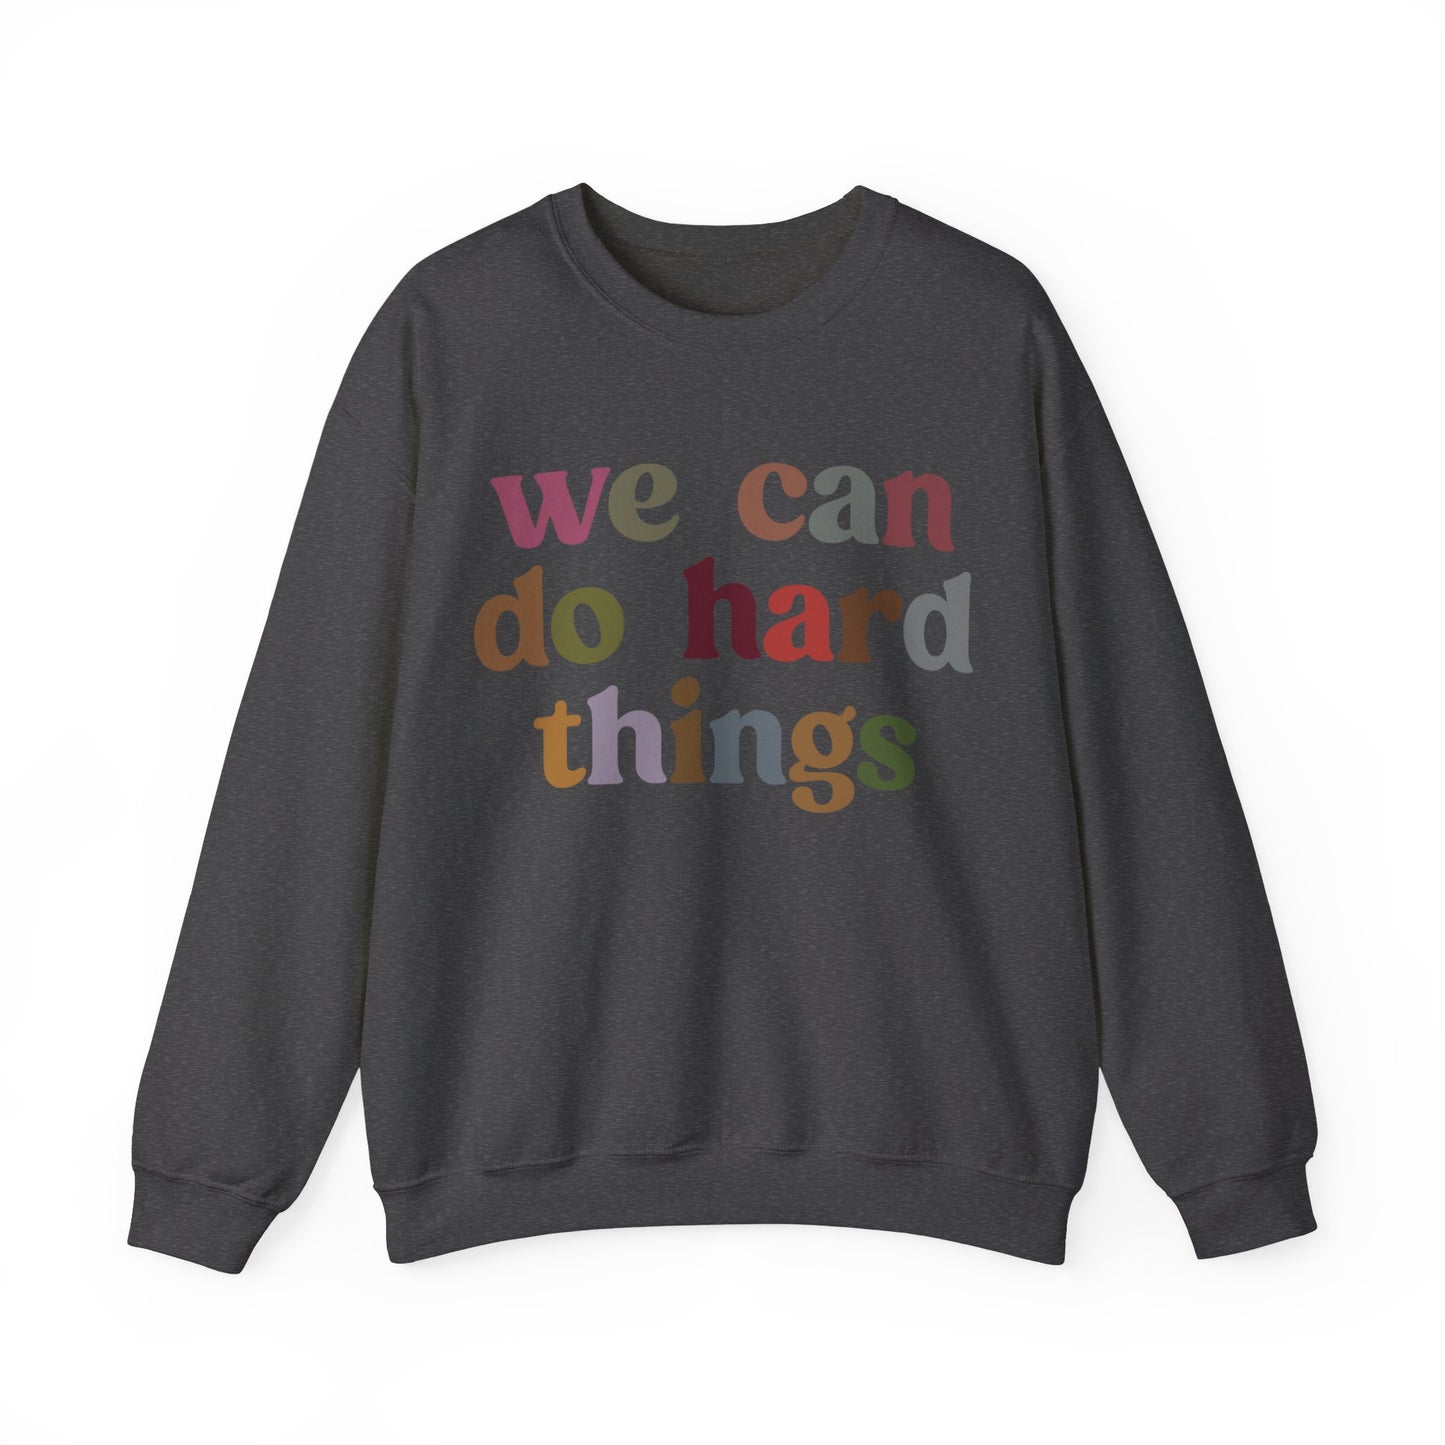 We Can Do Hard Things Sweatshirt, Take a Risk Sweatshirt, Strive Hard, State Testing Sweatshirt, Inspirational Sweatshirt for Women, S1467